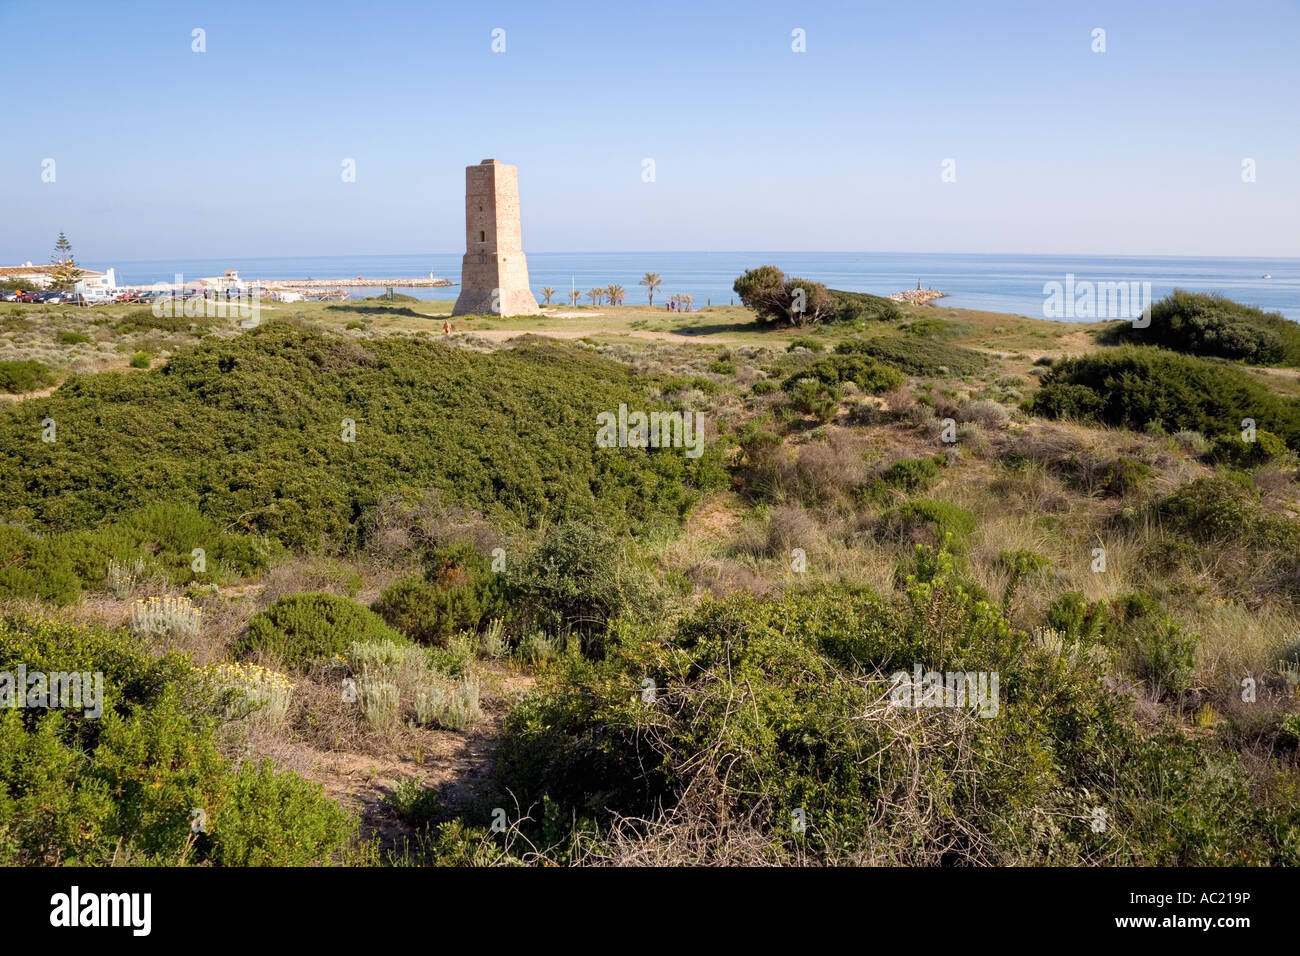 near Marbella Costa del Sol Malaga Province Spain 16th century monument Torre de los Ladrones Stock Photo